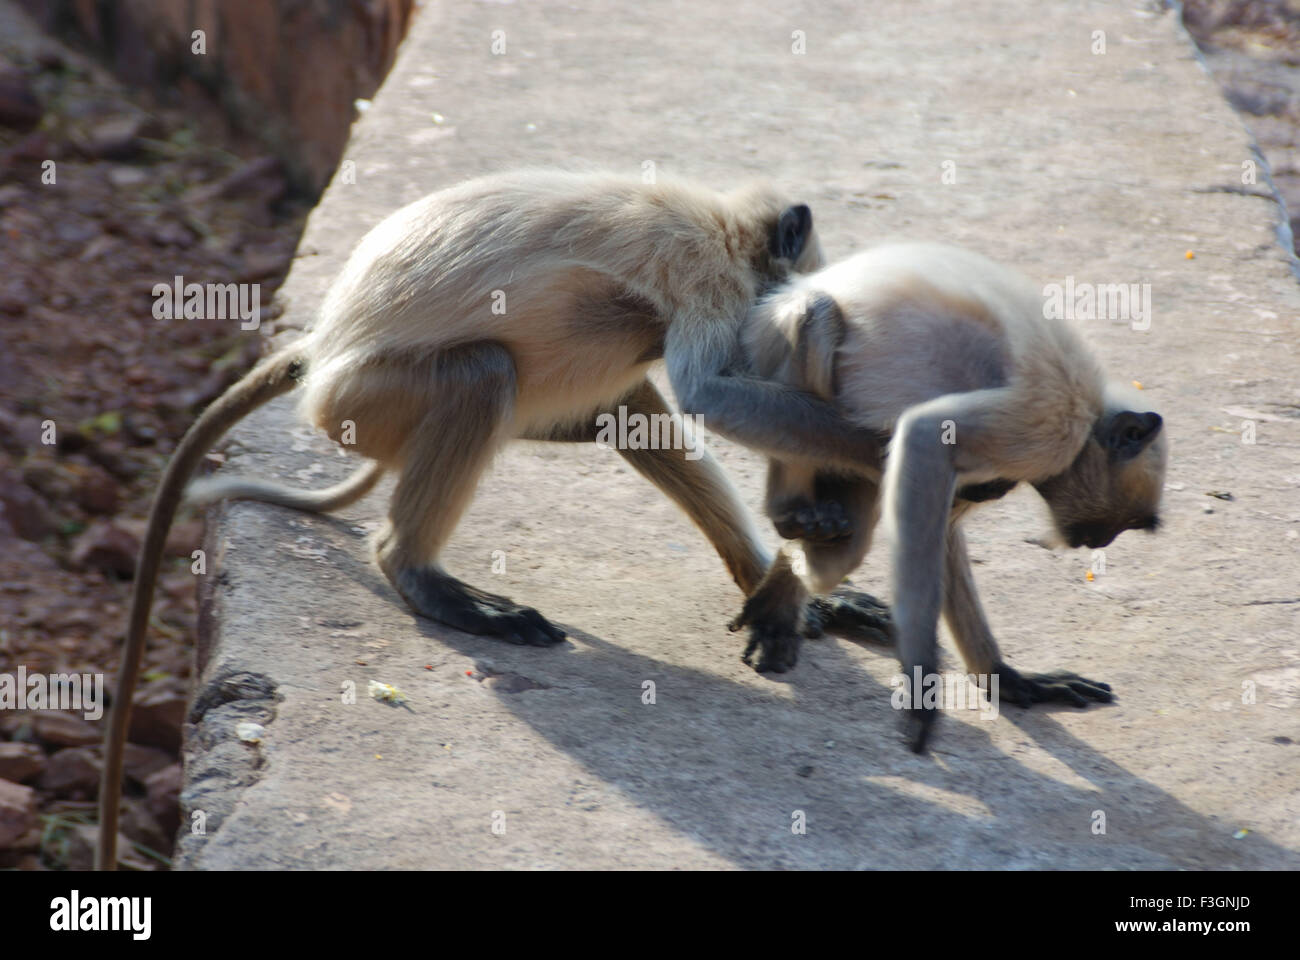 Two langur playing, Gray langur, Hanuman langur, Hanuman monkey, Jodhpur, Rajasthan, India, Asia Stock Photo